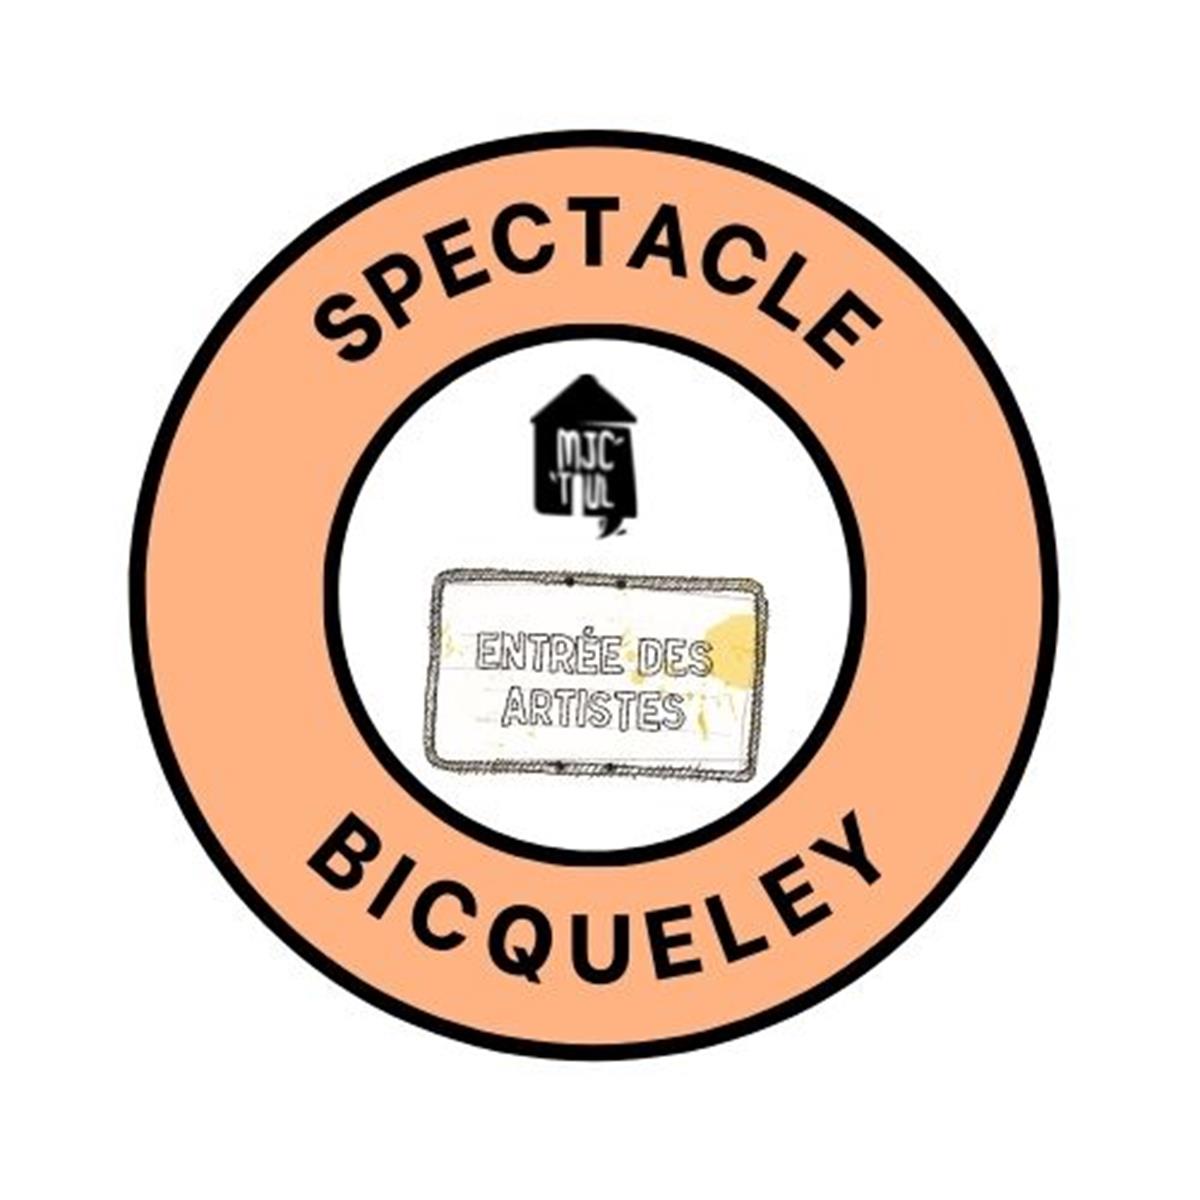 SPECTACLE DE L'ÉCOLE DE BICQUELEY